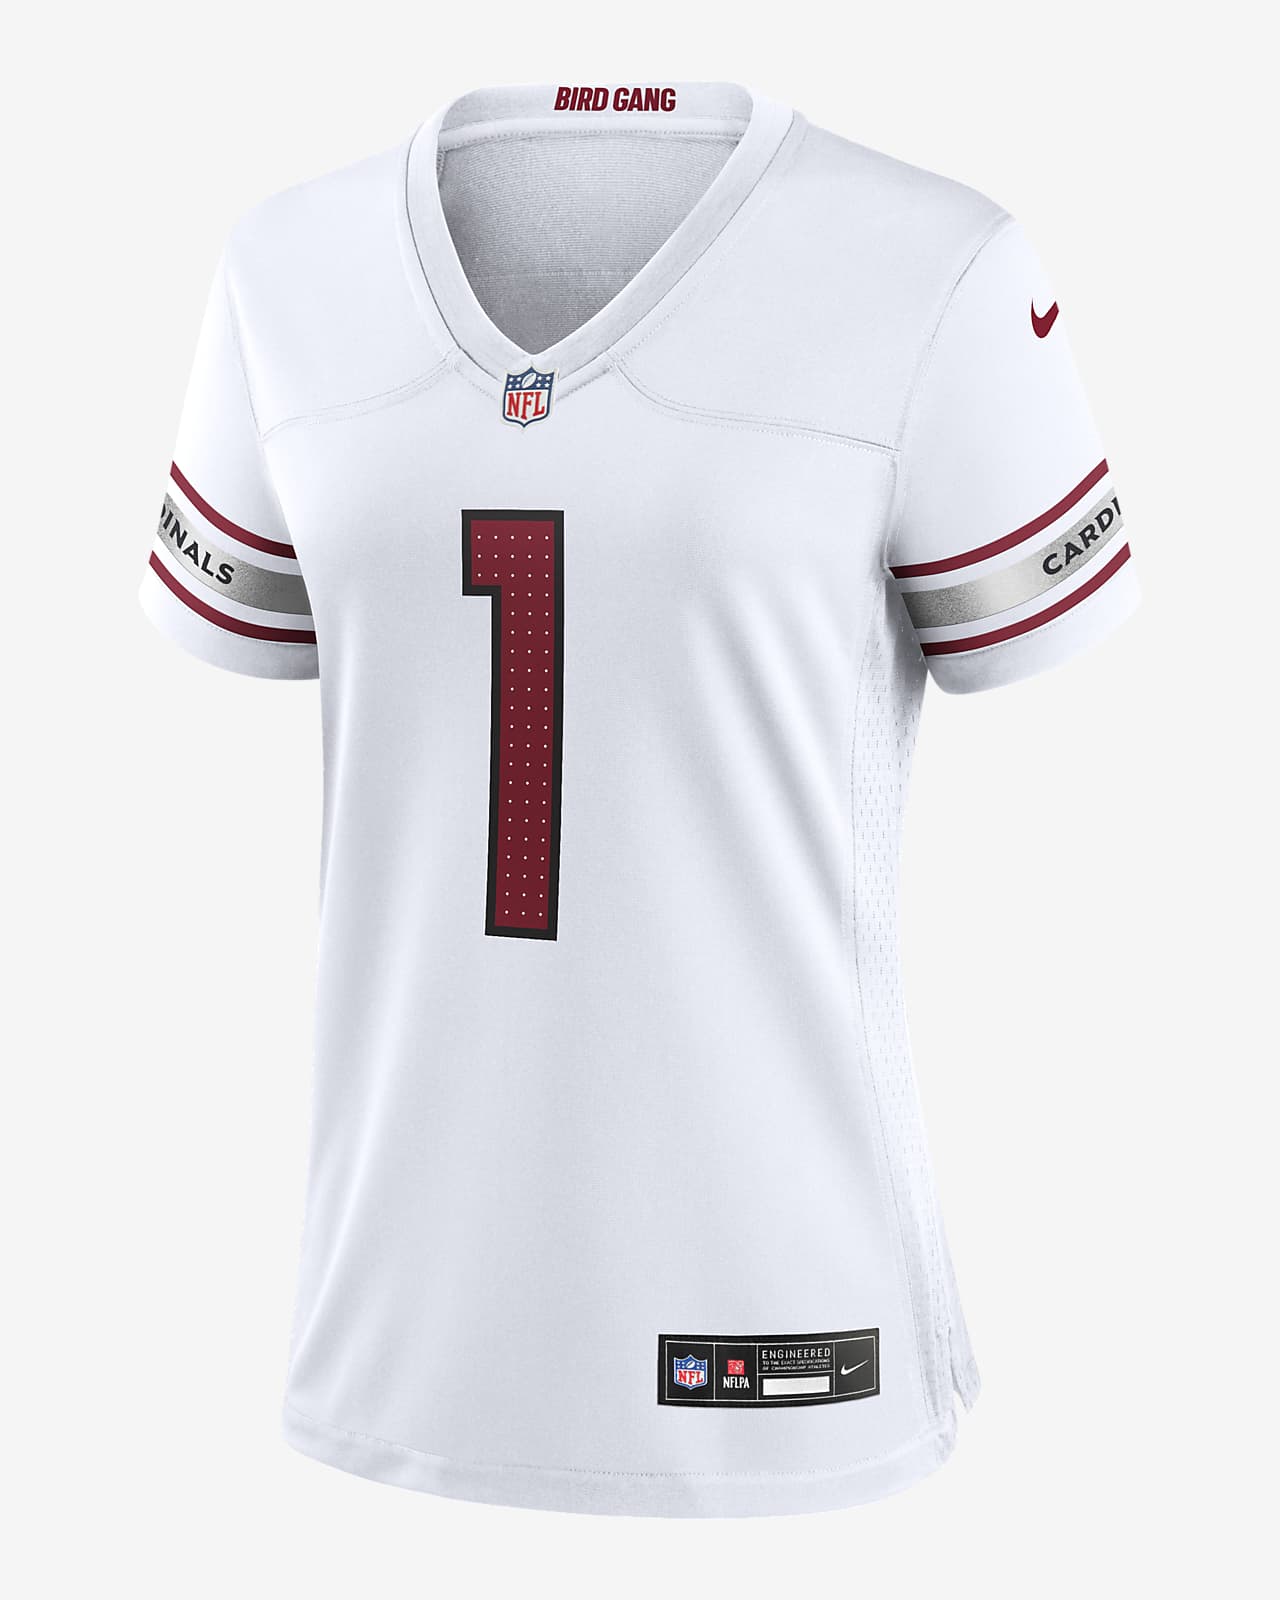 Jersey de fútbol americano Nike de la NFL Game para mujer Kyler Murray Arizona Cardinals